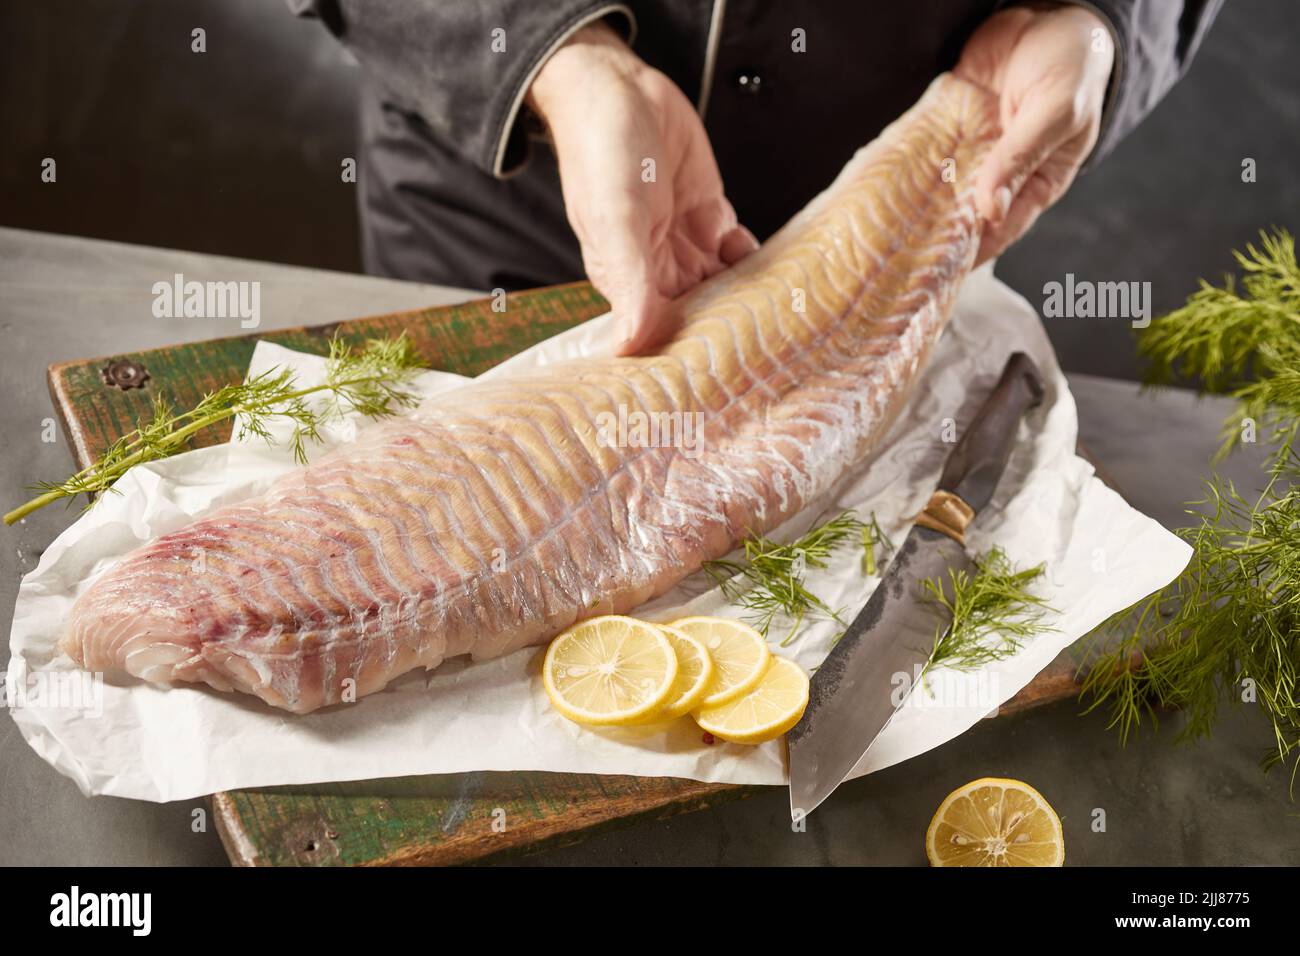 Du dessus de la récolte, un chef masculin méconnaissable avec un filet de poisson cru placé sur la planche à découper avec du citron et de l'aneth dans la cuisine Banque D'Images